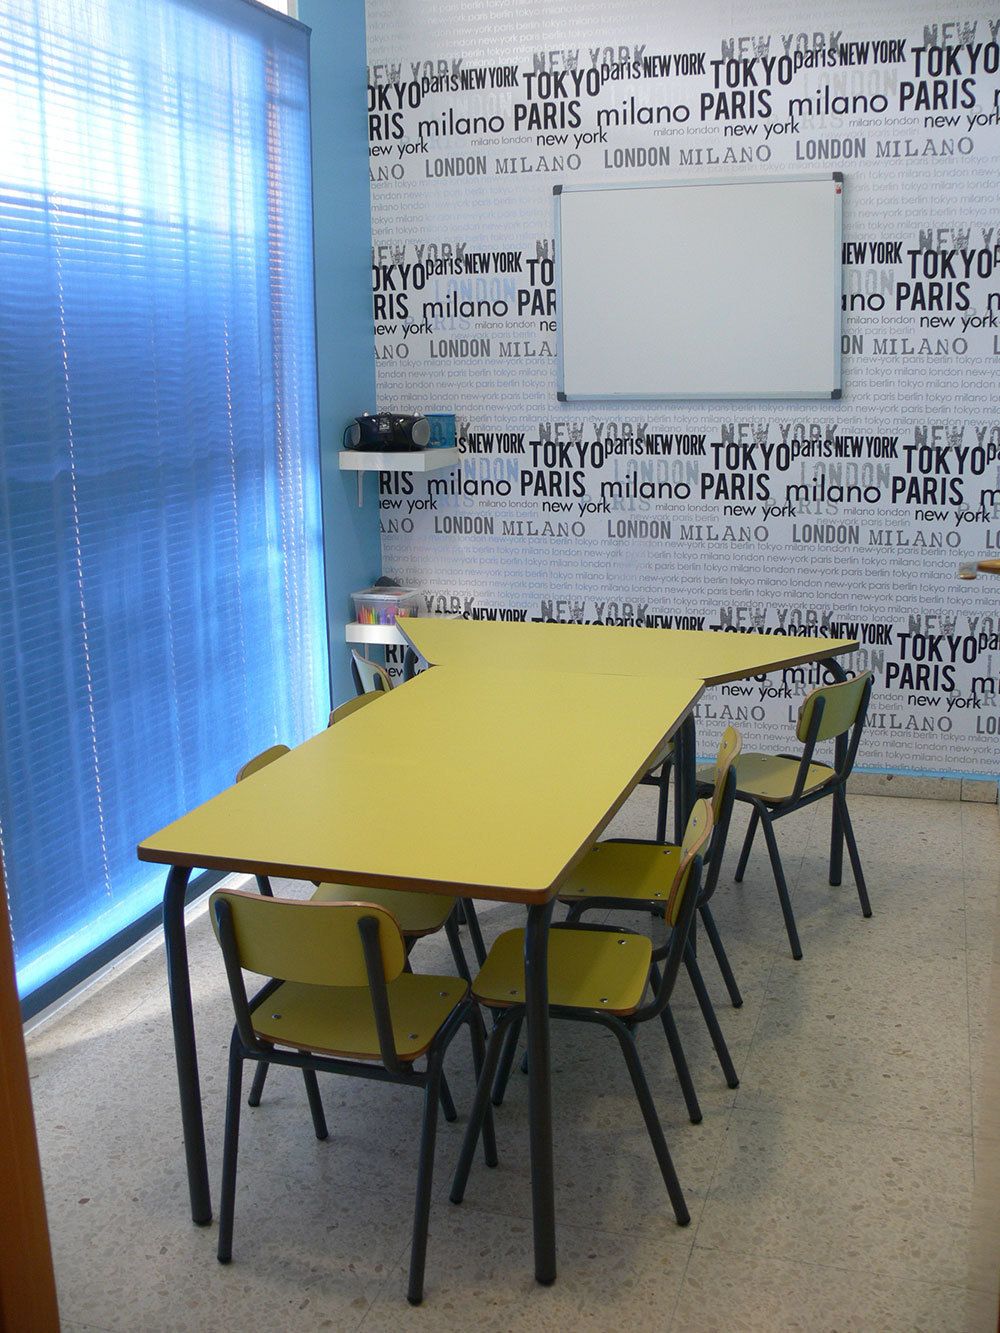 Interior d'aula amb paret empaperada amb noms de països i taula gran groga al centre